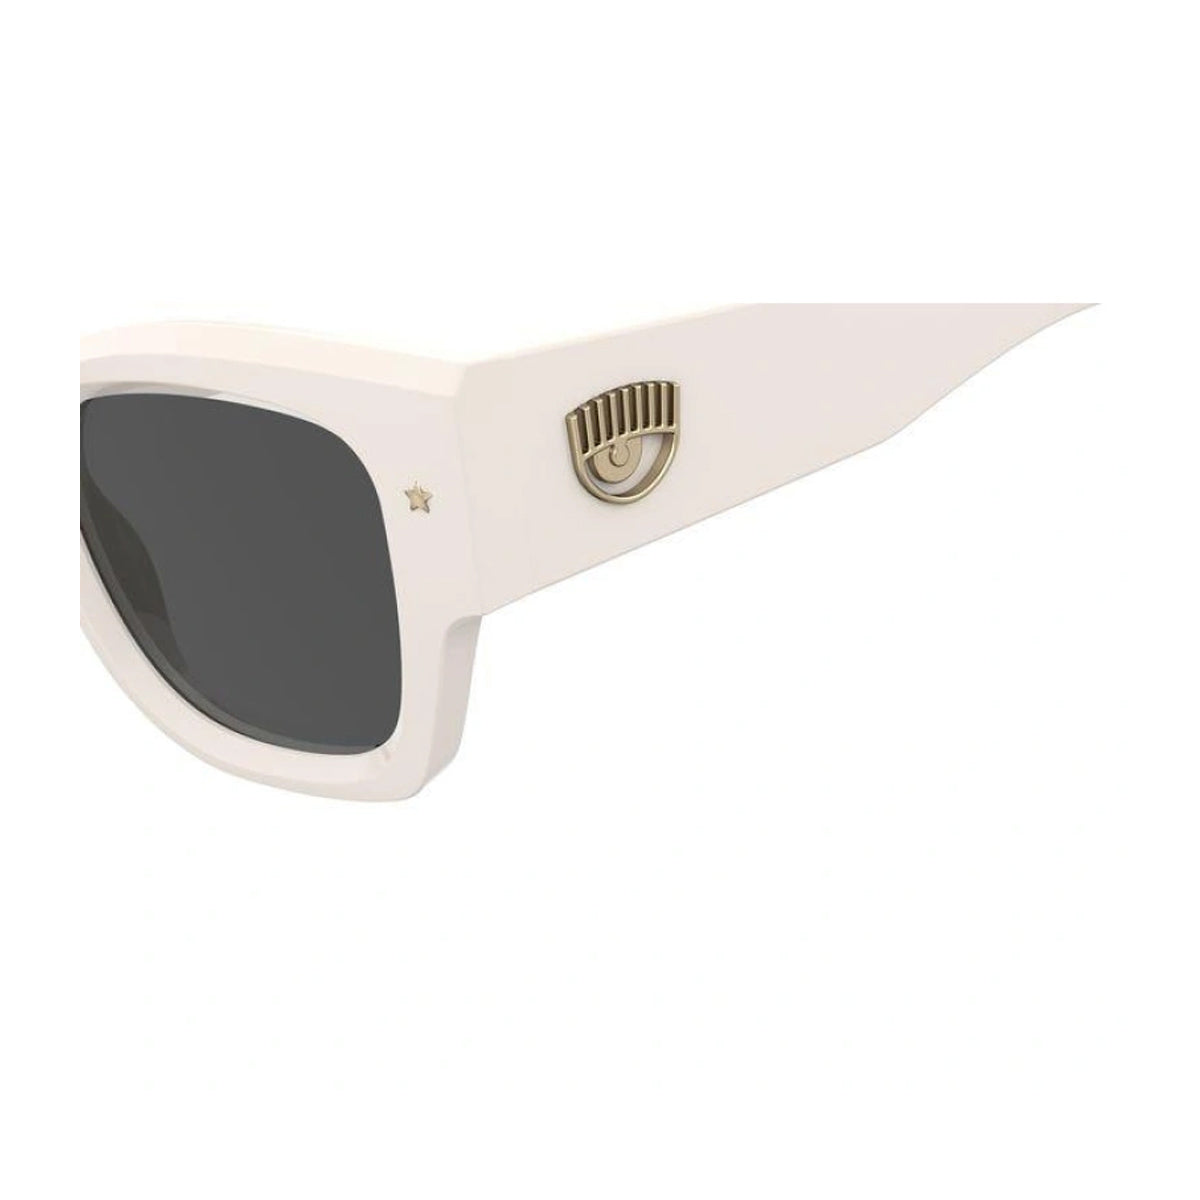 Cf 7023/s VK6/IR-Occhiali da sole-Chiara Ferragni-La collezione di occhiali di Chiara Ferragni rappresenta un'armoniosa fusione di stile e creatività. Questi occhiali, ideati dalla celebre influencer, sono curati nei minimi dettagli e caratterizzati da un design cool, chic e all'avanguardia. Questo modello presenta una montatura oversize dalla forma squadrata. Le aste decorate con l'oversized eyelike ed il motivo 3D sono perfettamente equilibrati da una sofisticata stella in metallo sul frontale. - Dresso